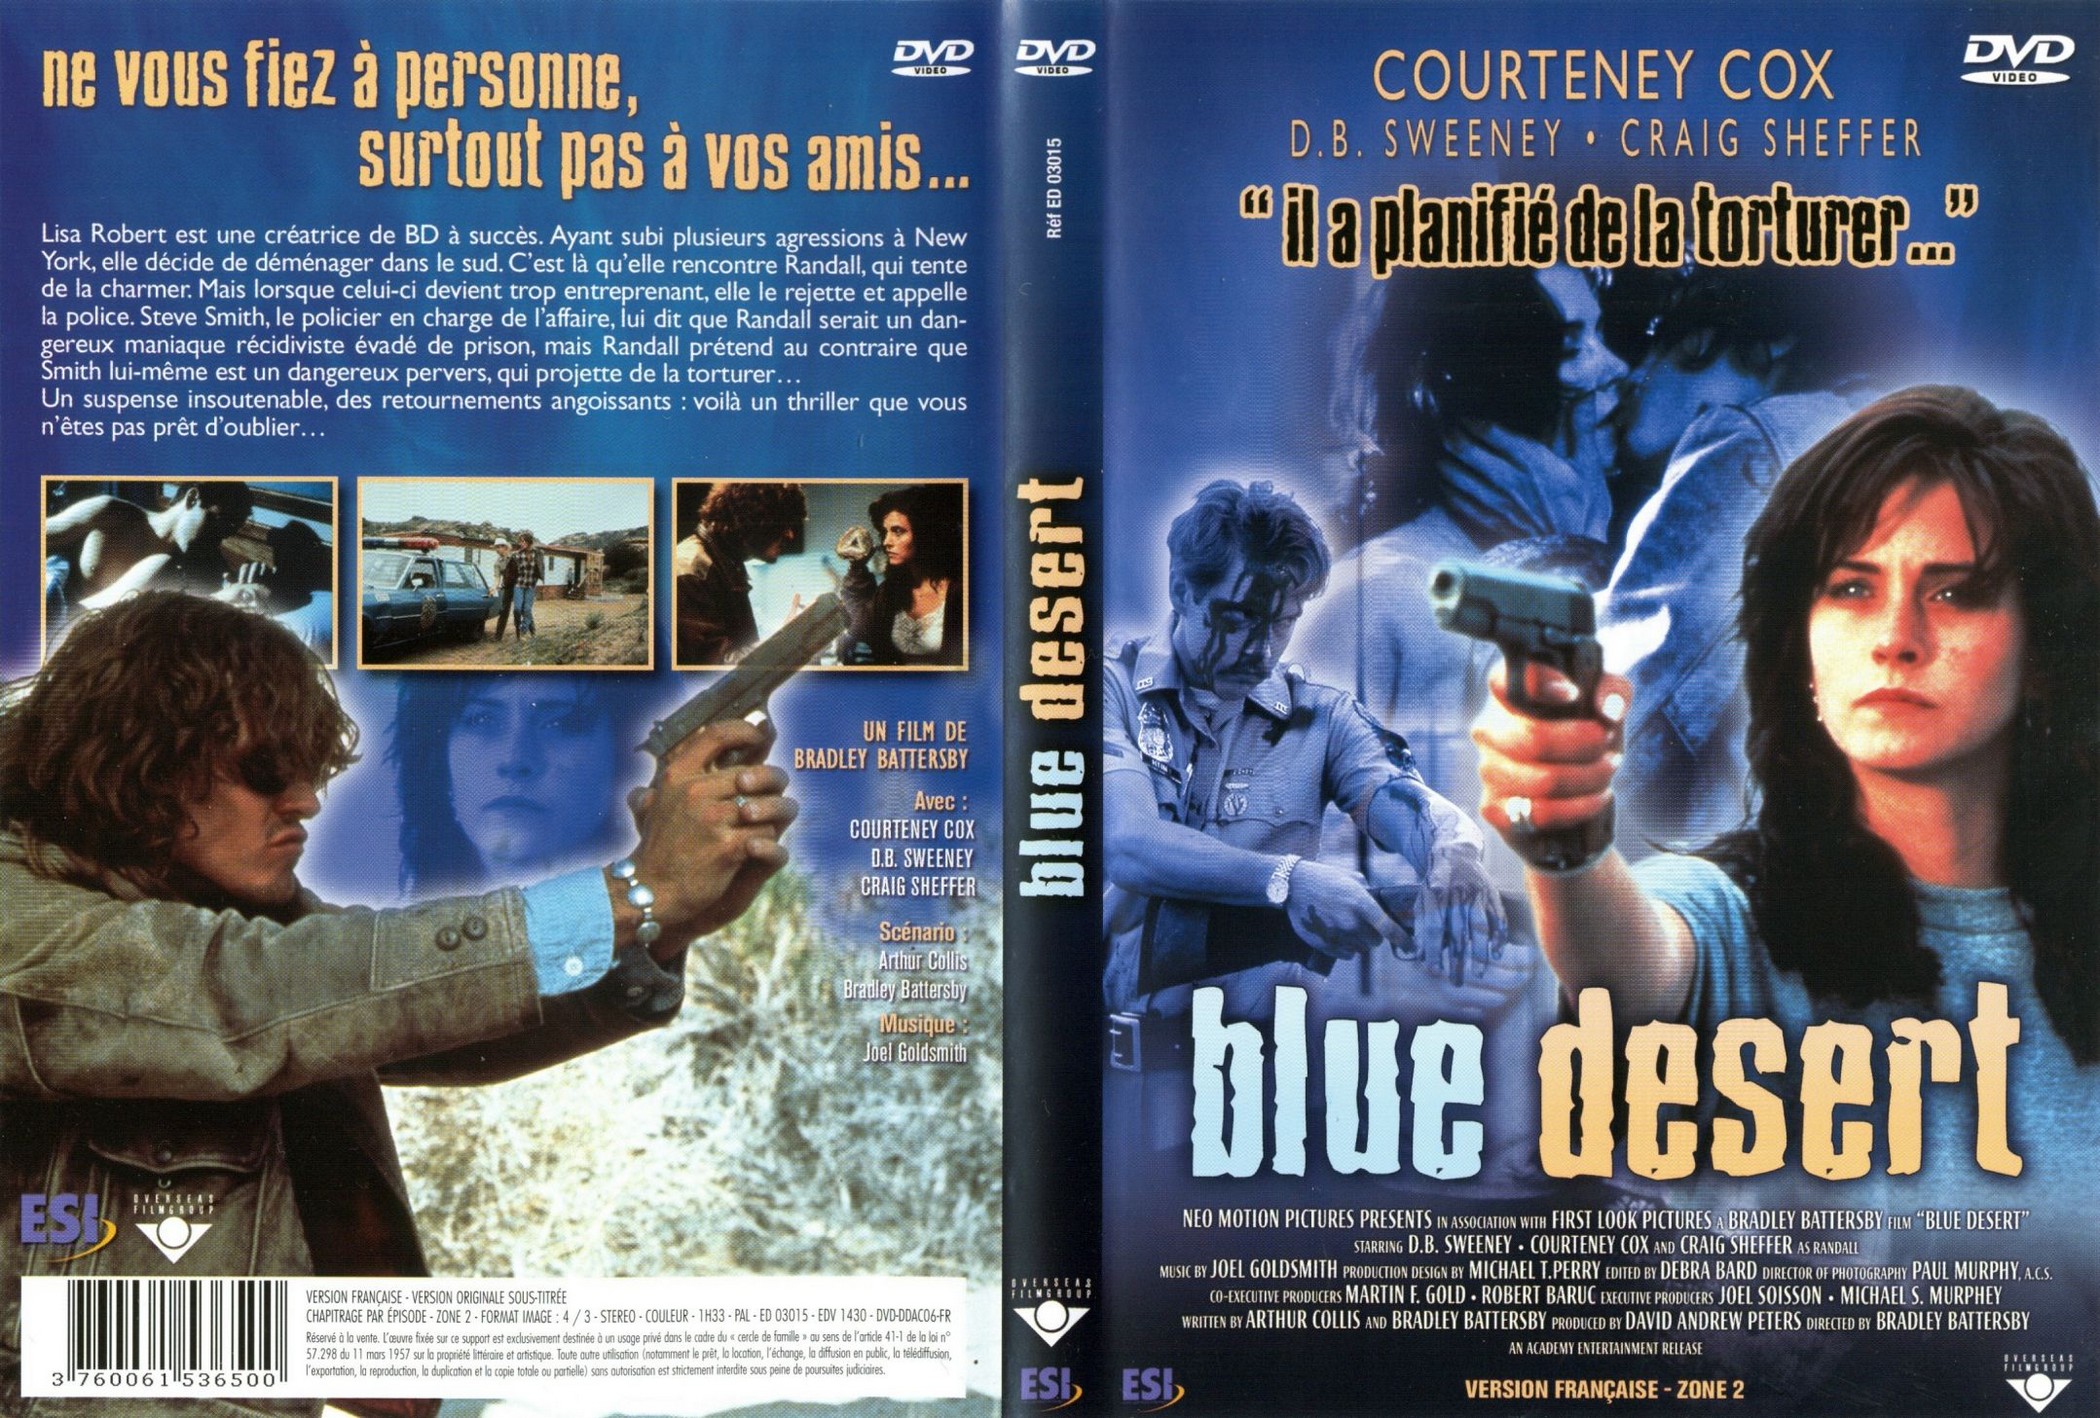 Jaquette DVD Blue desert